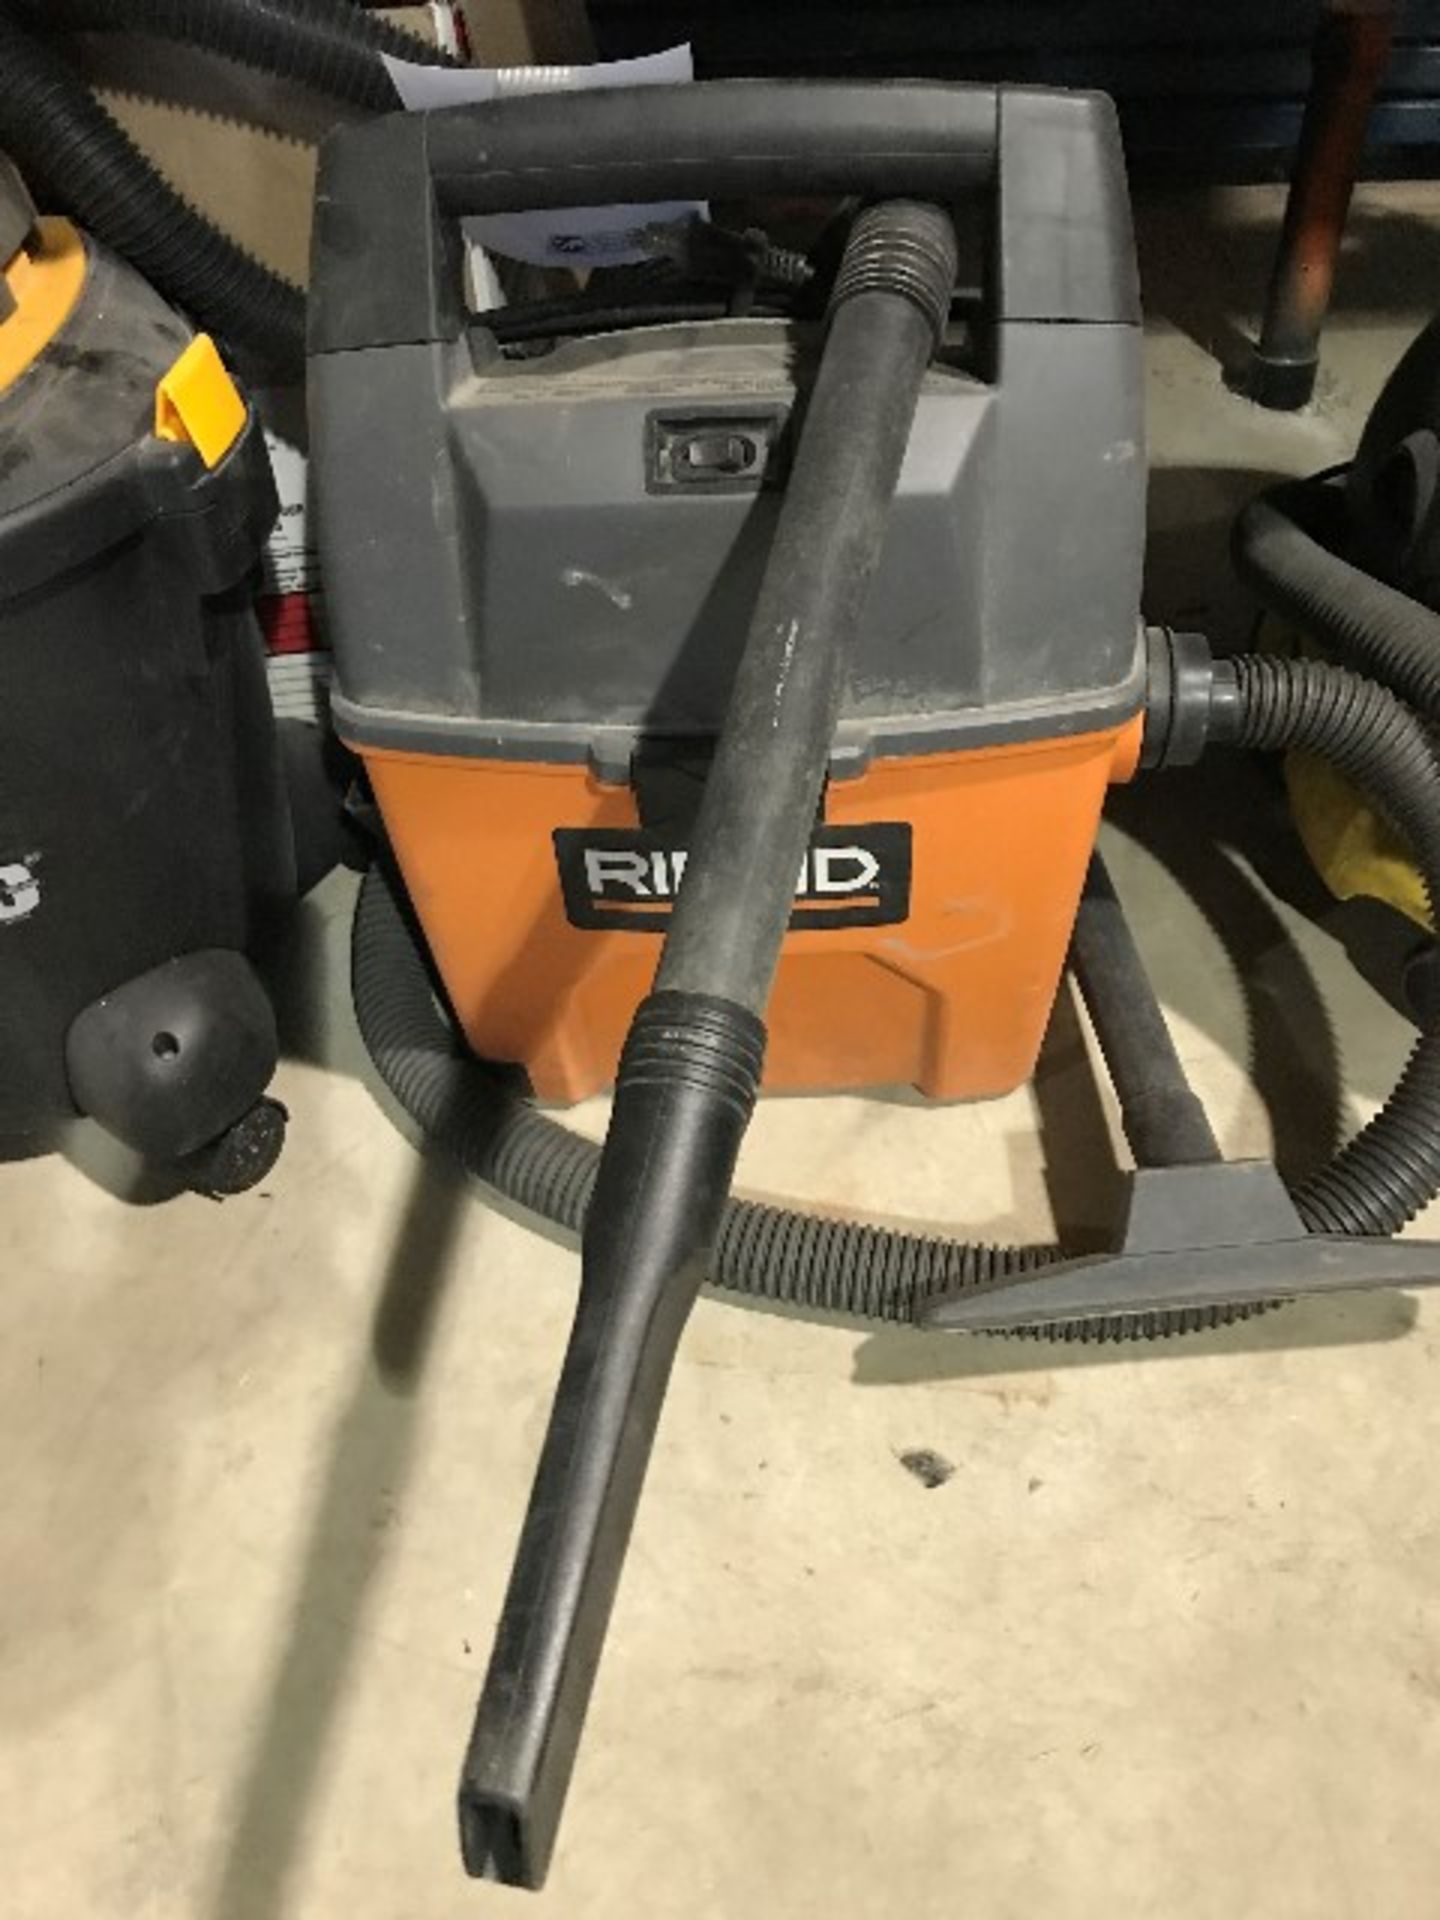 Rigid portable vacuum